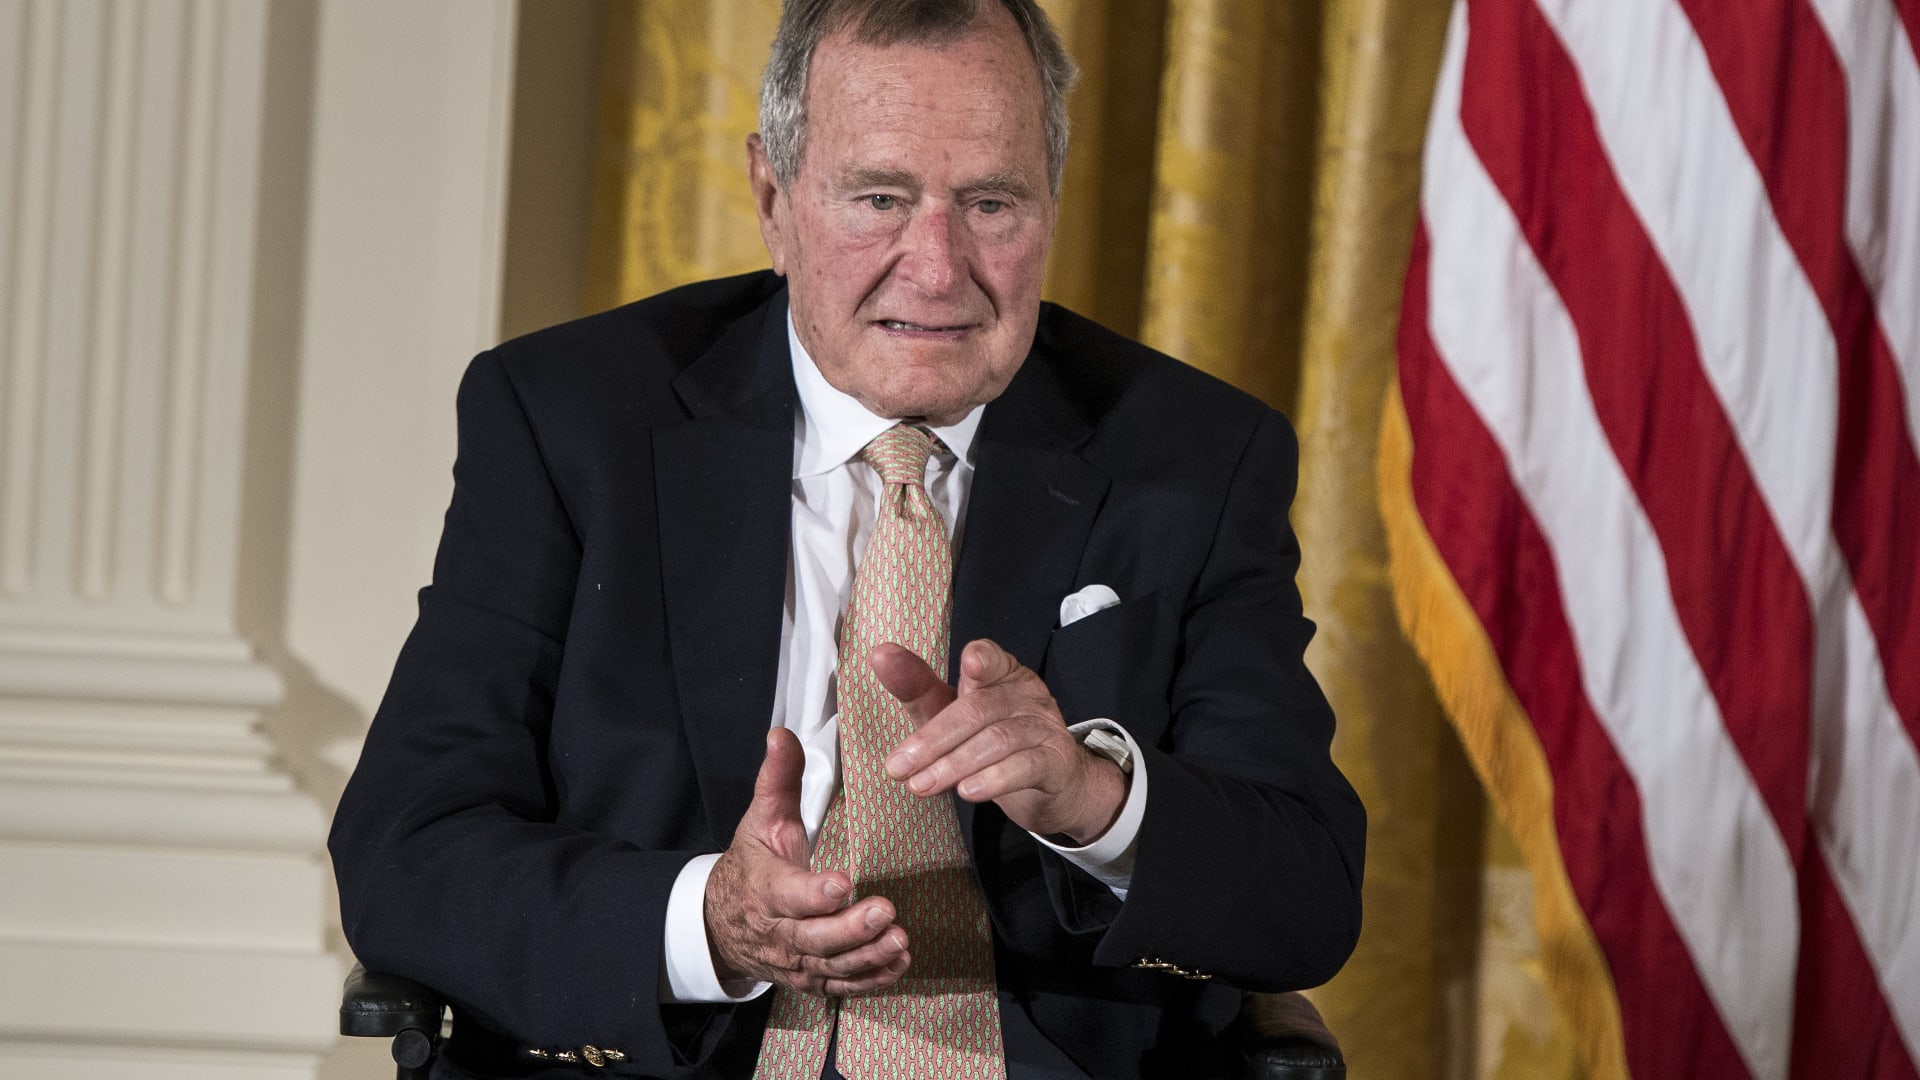 الرئيس بوش الأب يوضح حقيقة "التحرش" بنجمة من هوليوود